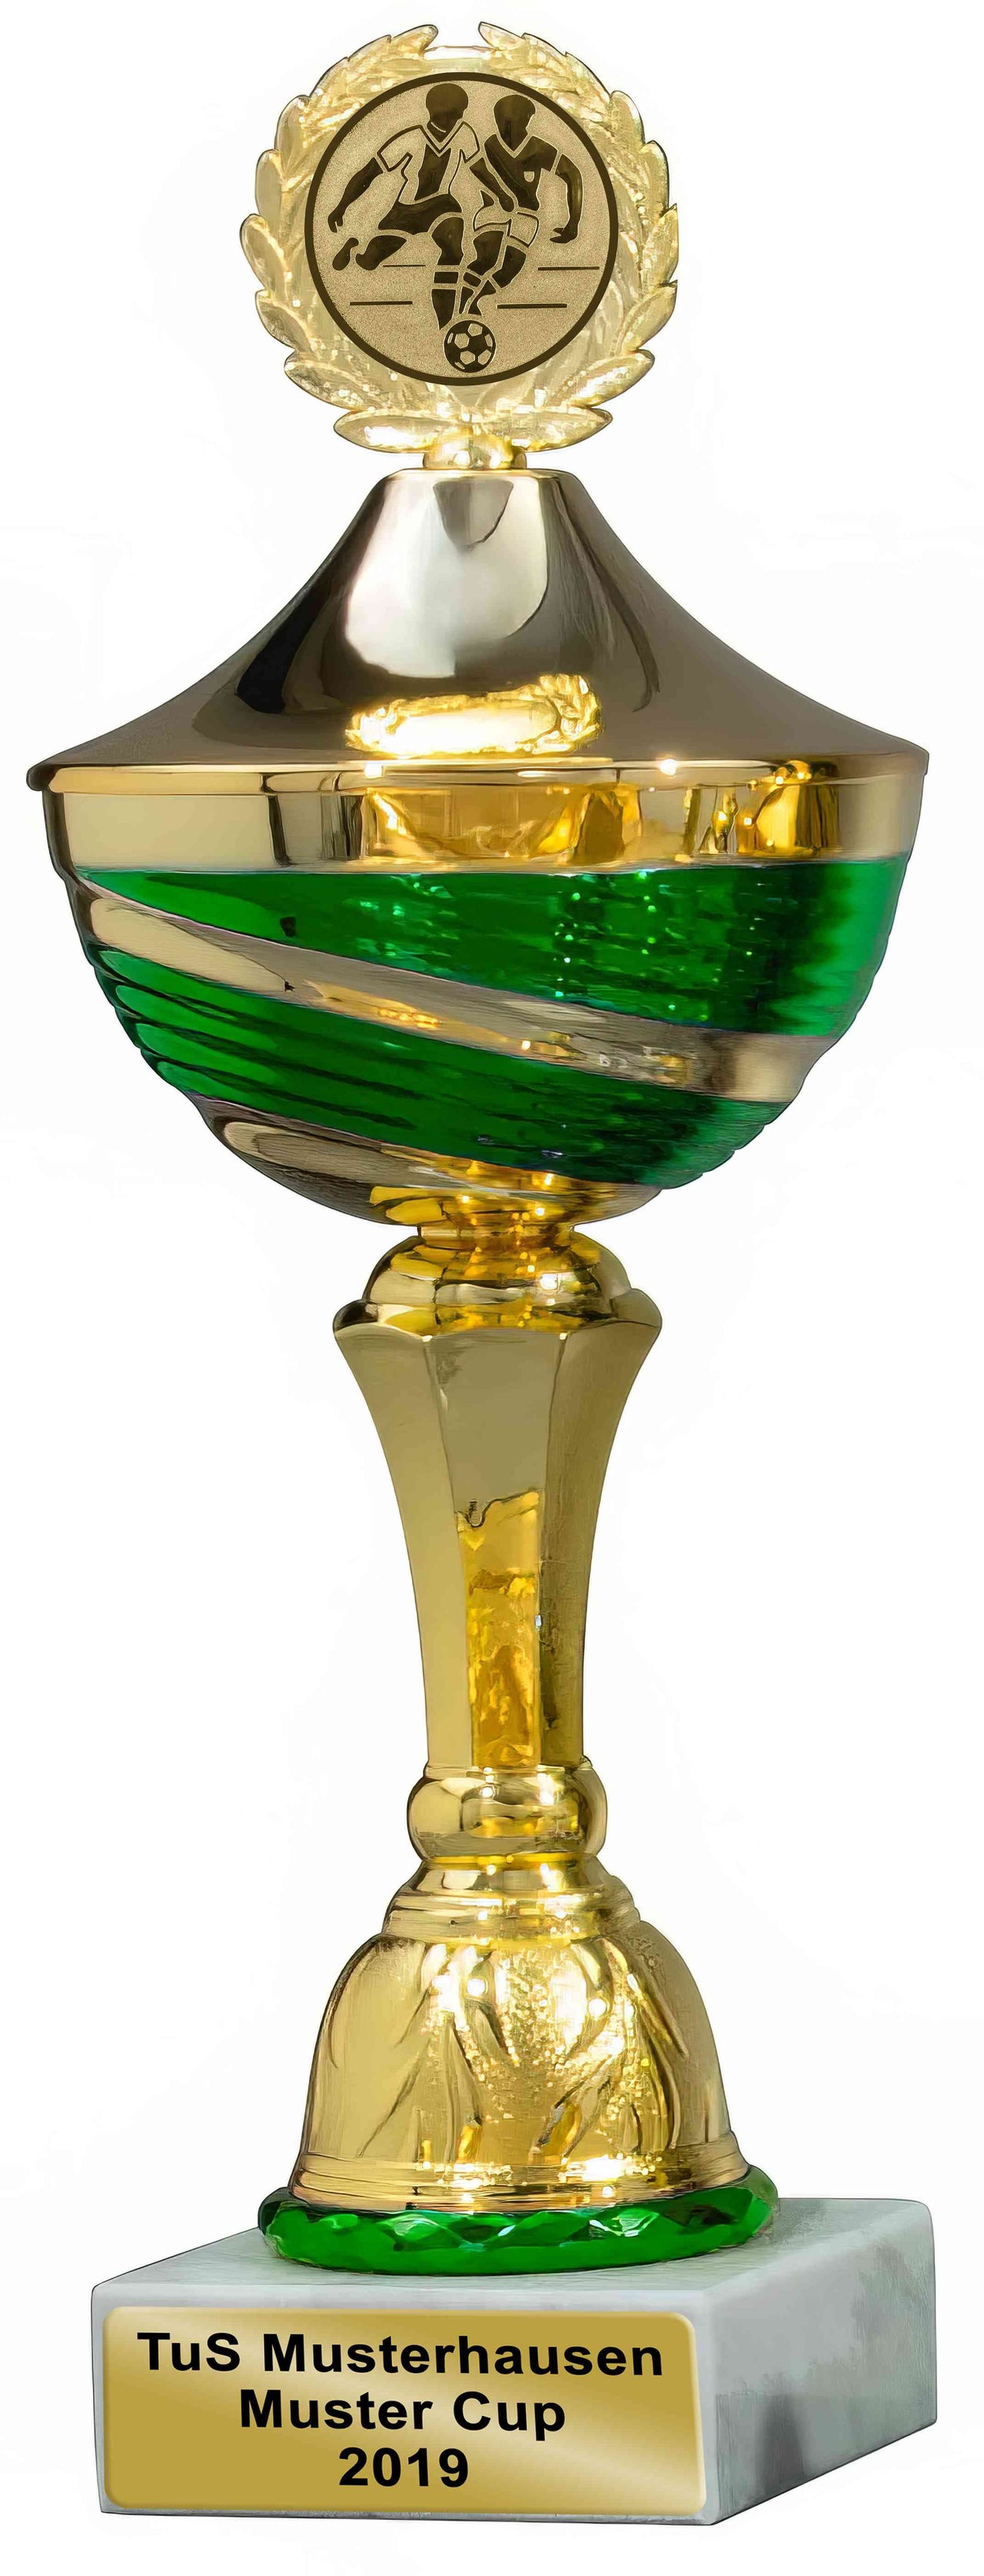 Ein Pokal Rostock, 8-er Pokalserie mit Deckel 267 mm – 380 mm PK759570-8-E50 mit einem Emblem auf der Oberseite und der Gravur „TuS Musterhausen Muster Cup 2019“ auf der Unterseite, hergestellt aus hochwertigem Material.